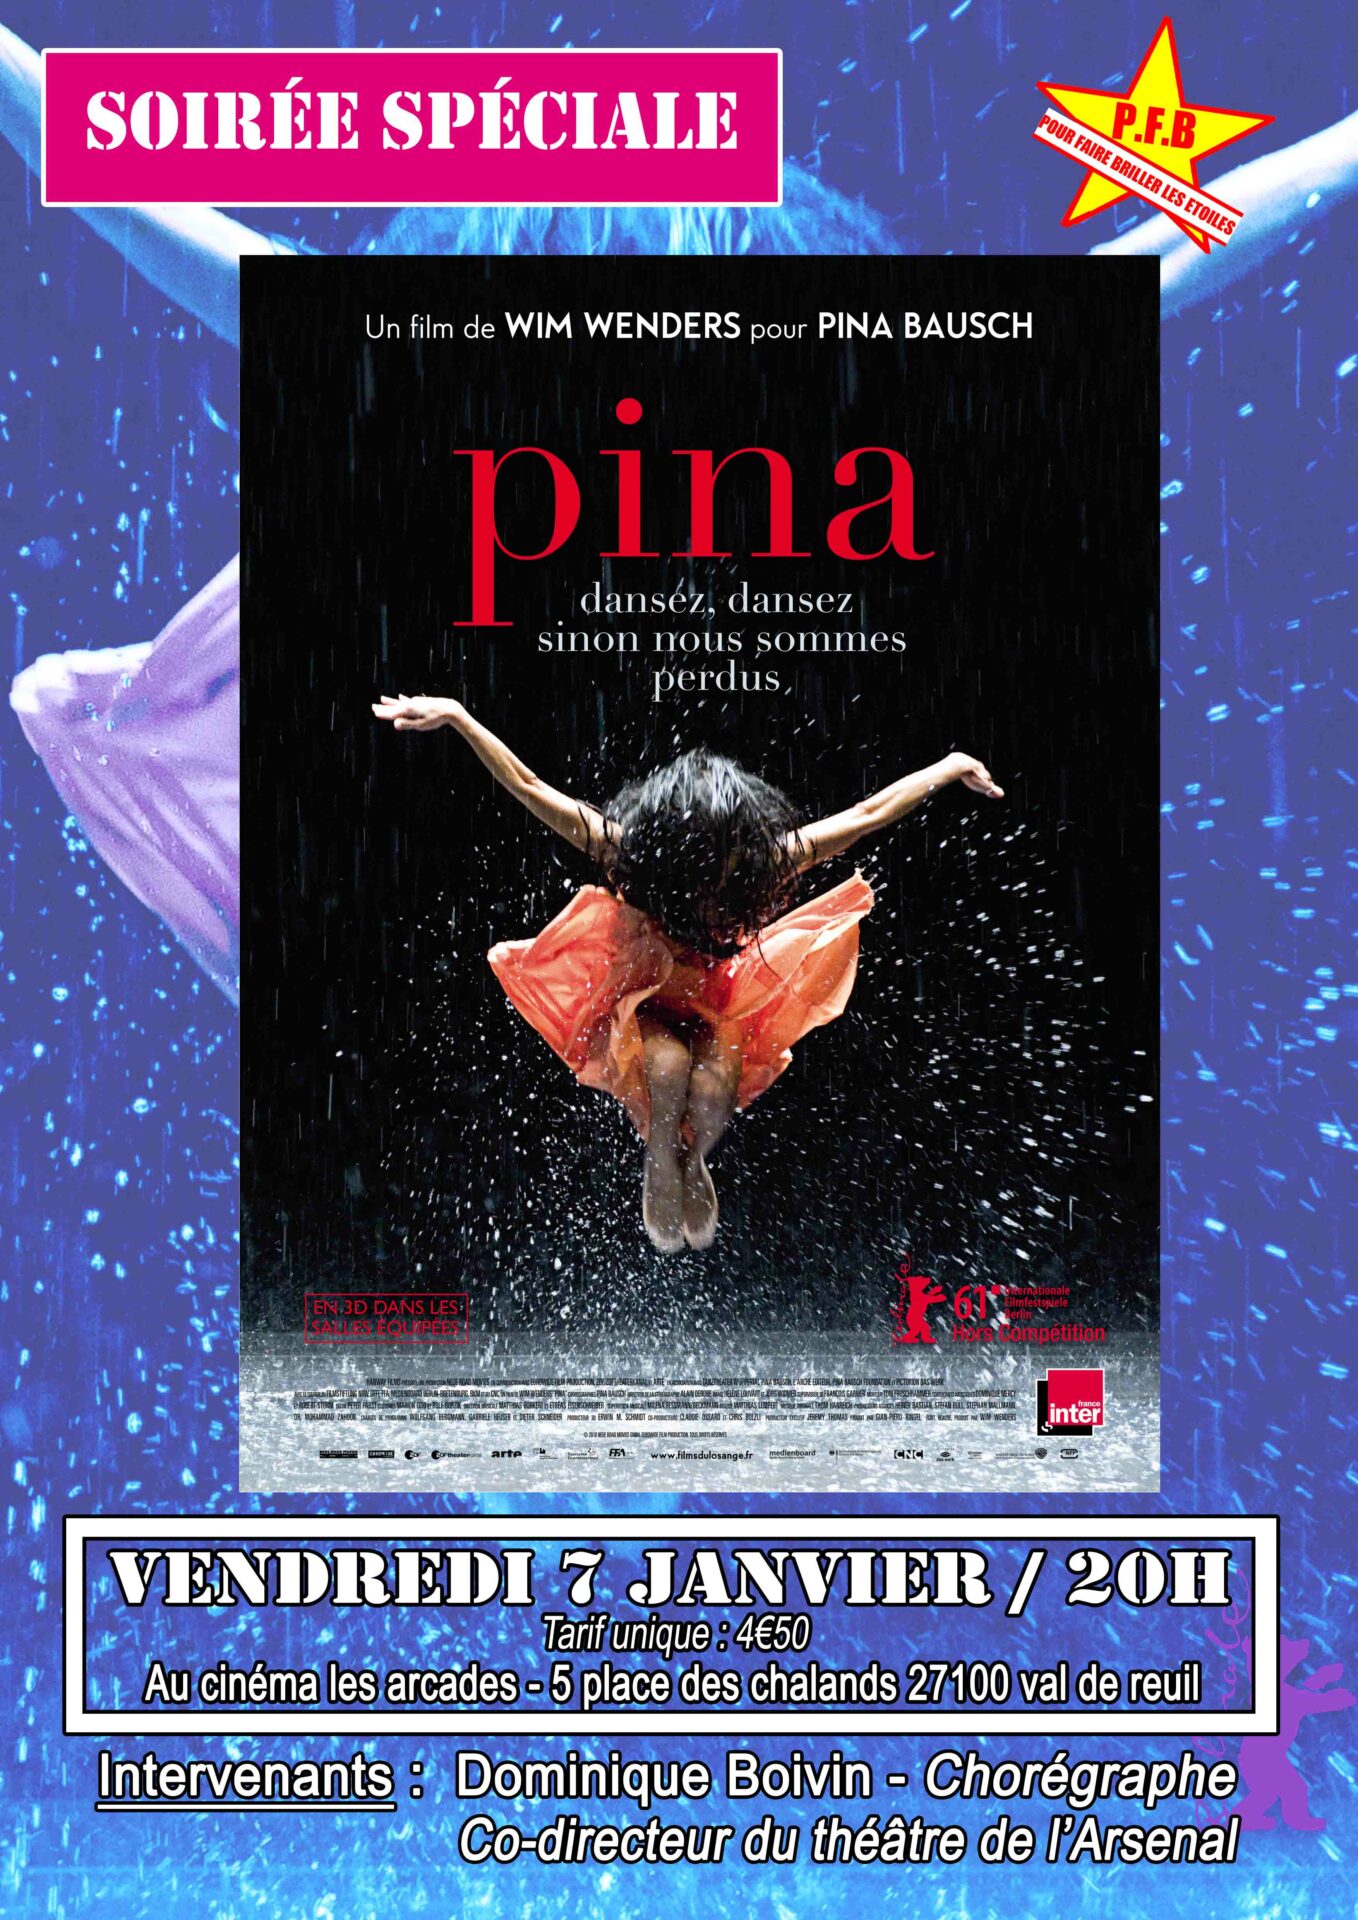 Cinéma Les Arcades : soirée spéciale autour du film « Pina », Wim Wenders